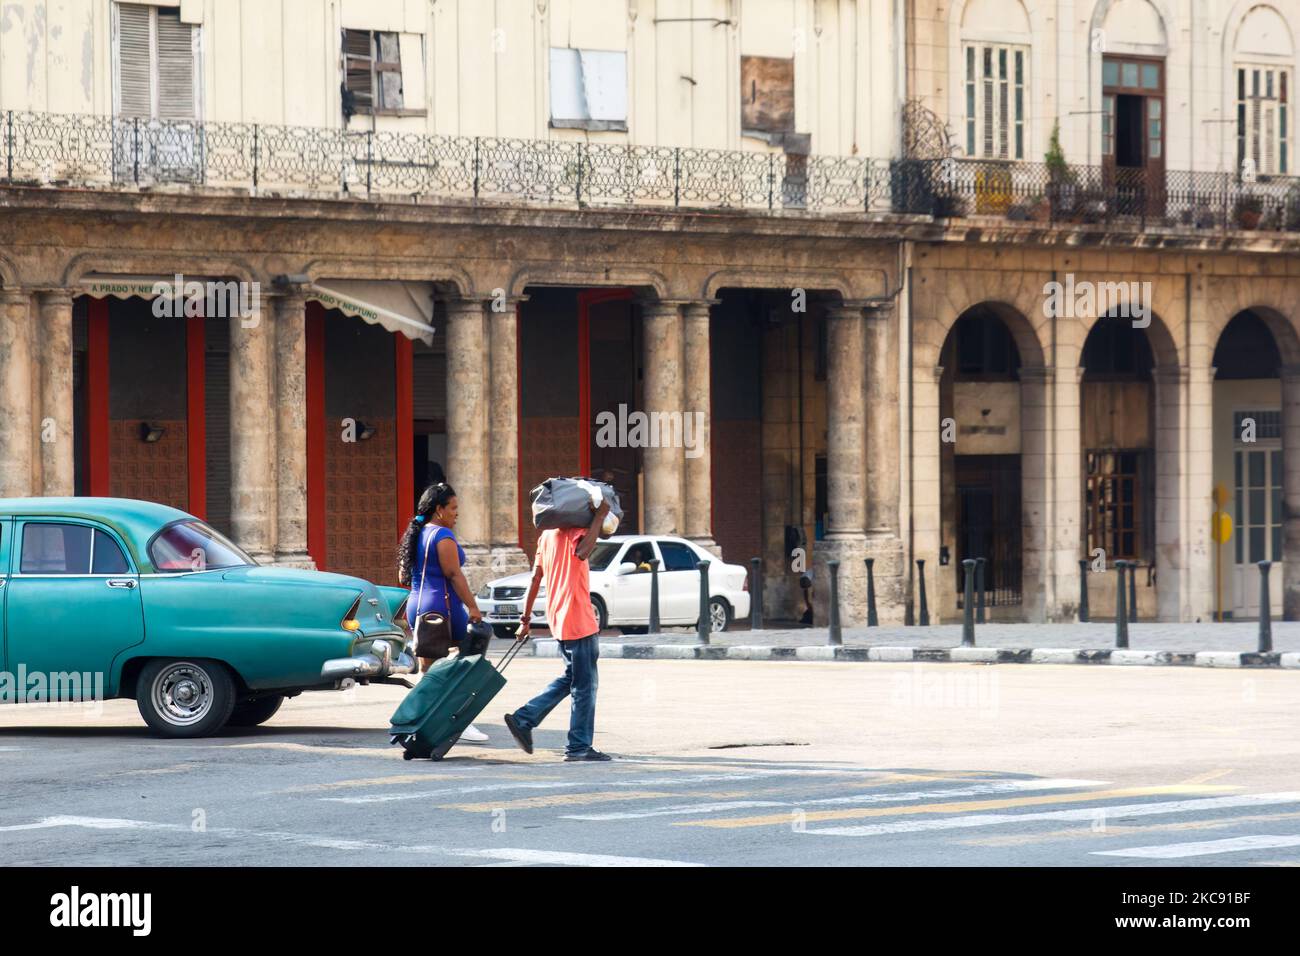 Los cubanos llevan dos grandes maletas en la calle de la ciudad. Un coche americano clásico conduce por fachadas de edificios erosionadas Foto de stock